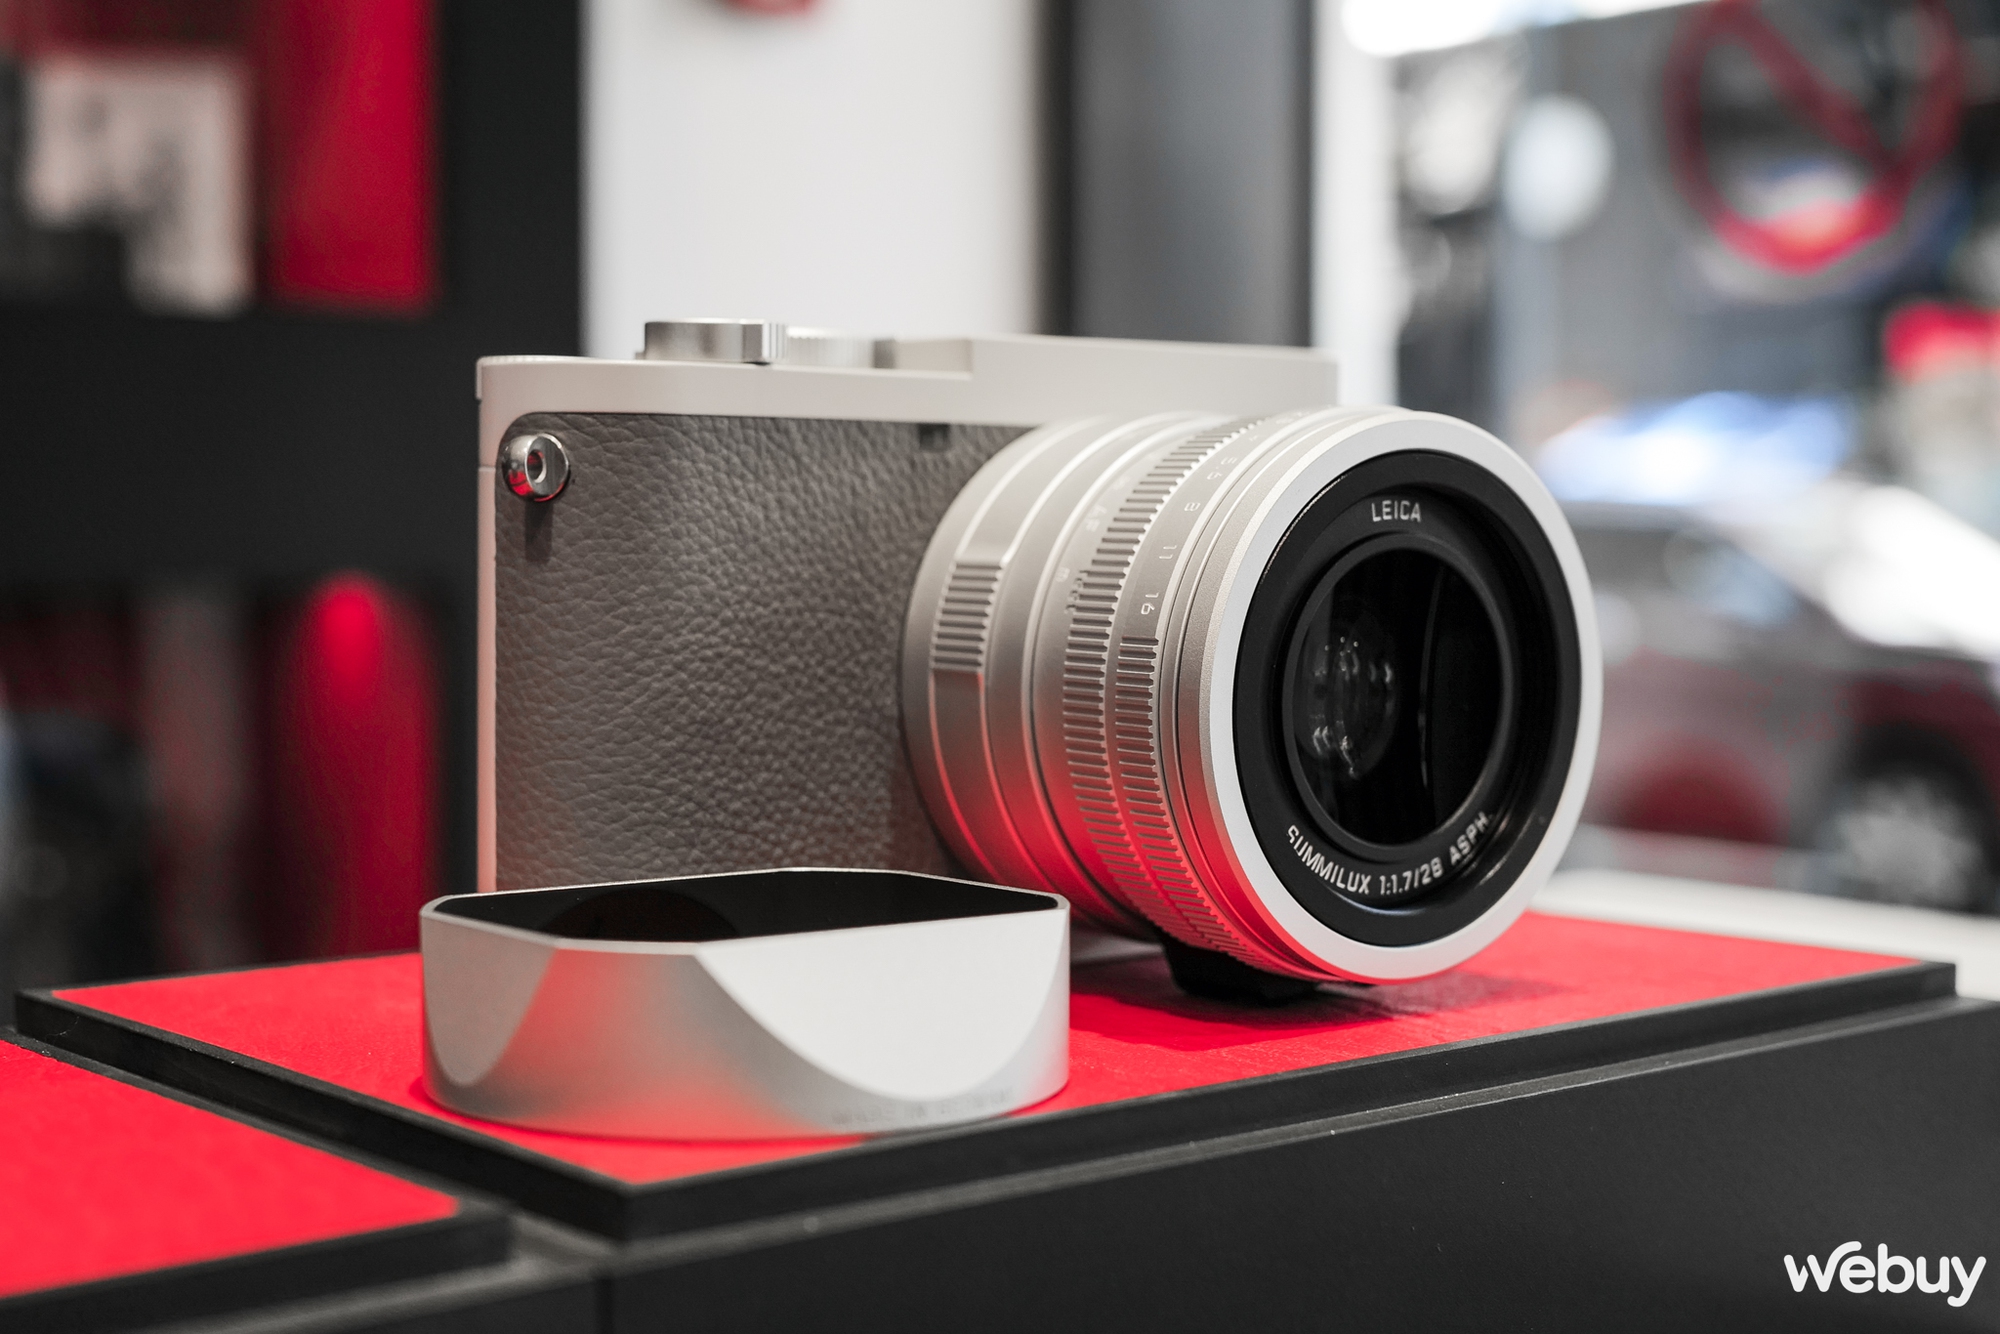 Mở hộp máy ảnh hạng sang Leica Q2 Ghost Edition: Màu xám xi măng, lấy ý tưởng từ đồng hồ Rolex hiếm - Ảnh 7.